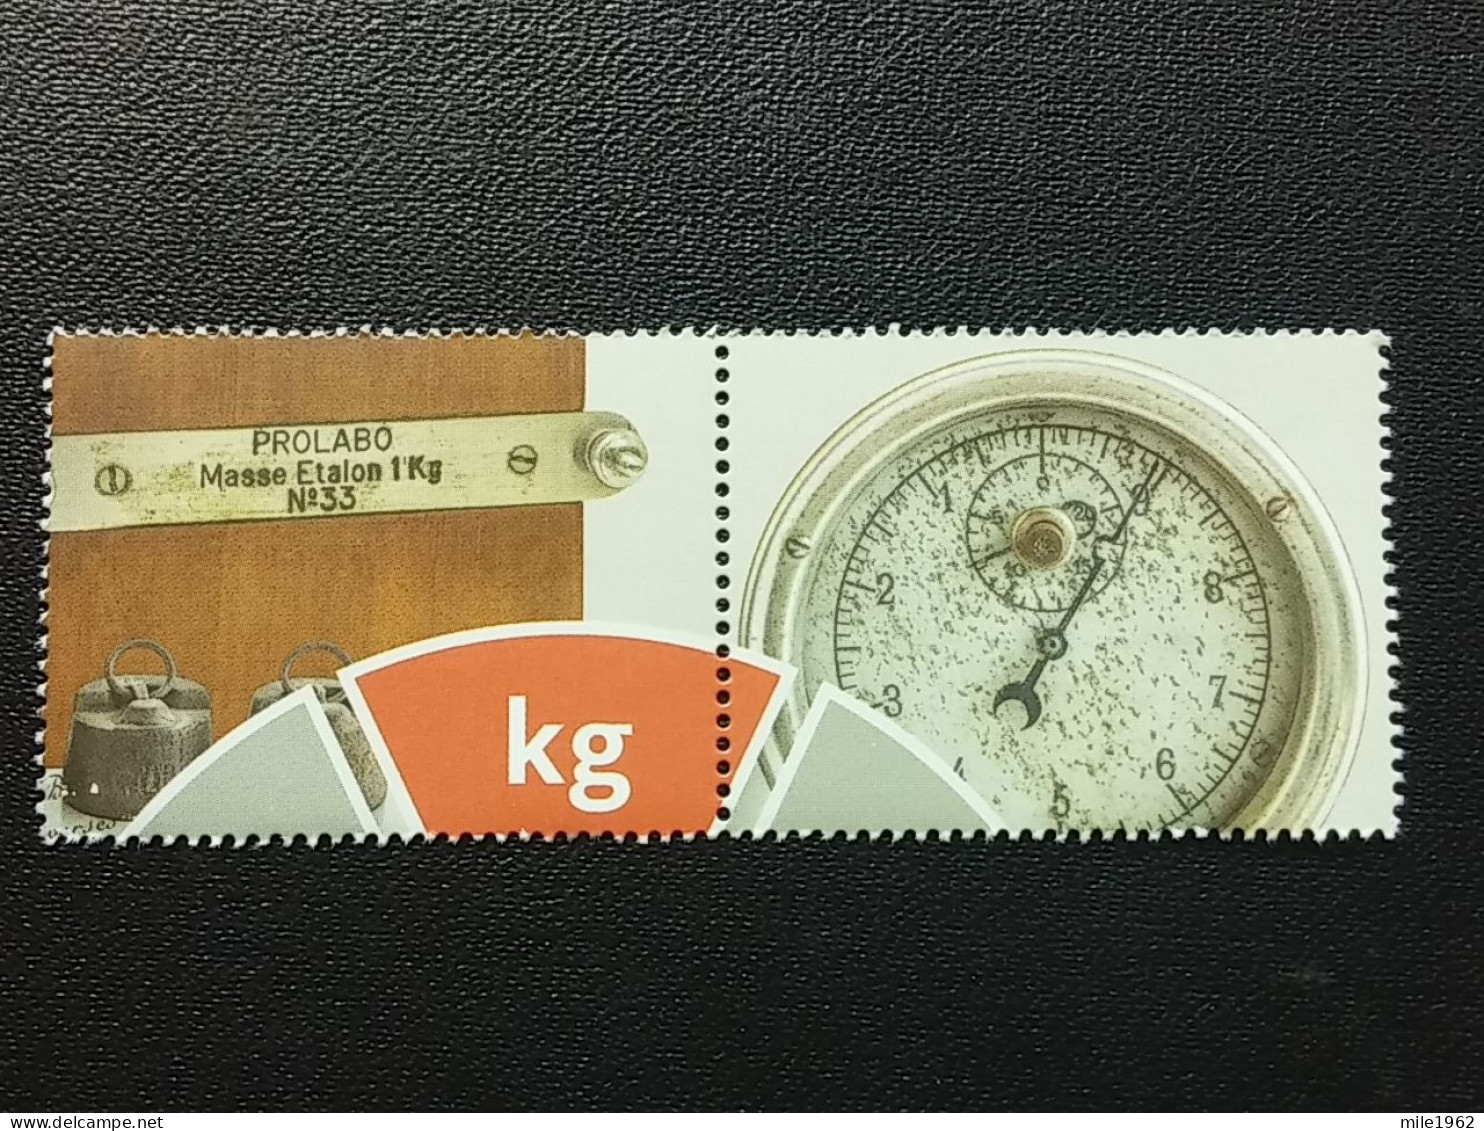 Stamp 3-15 - Serbia 2023 - VIGNETTE - 150 Years Of Metrology In Serbia - Serbie